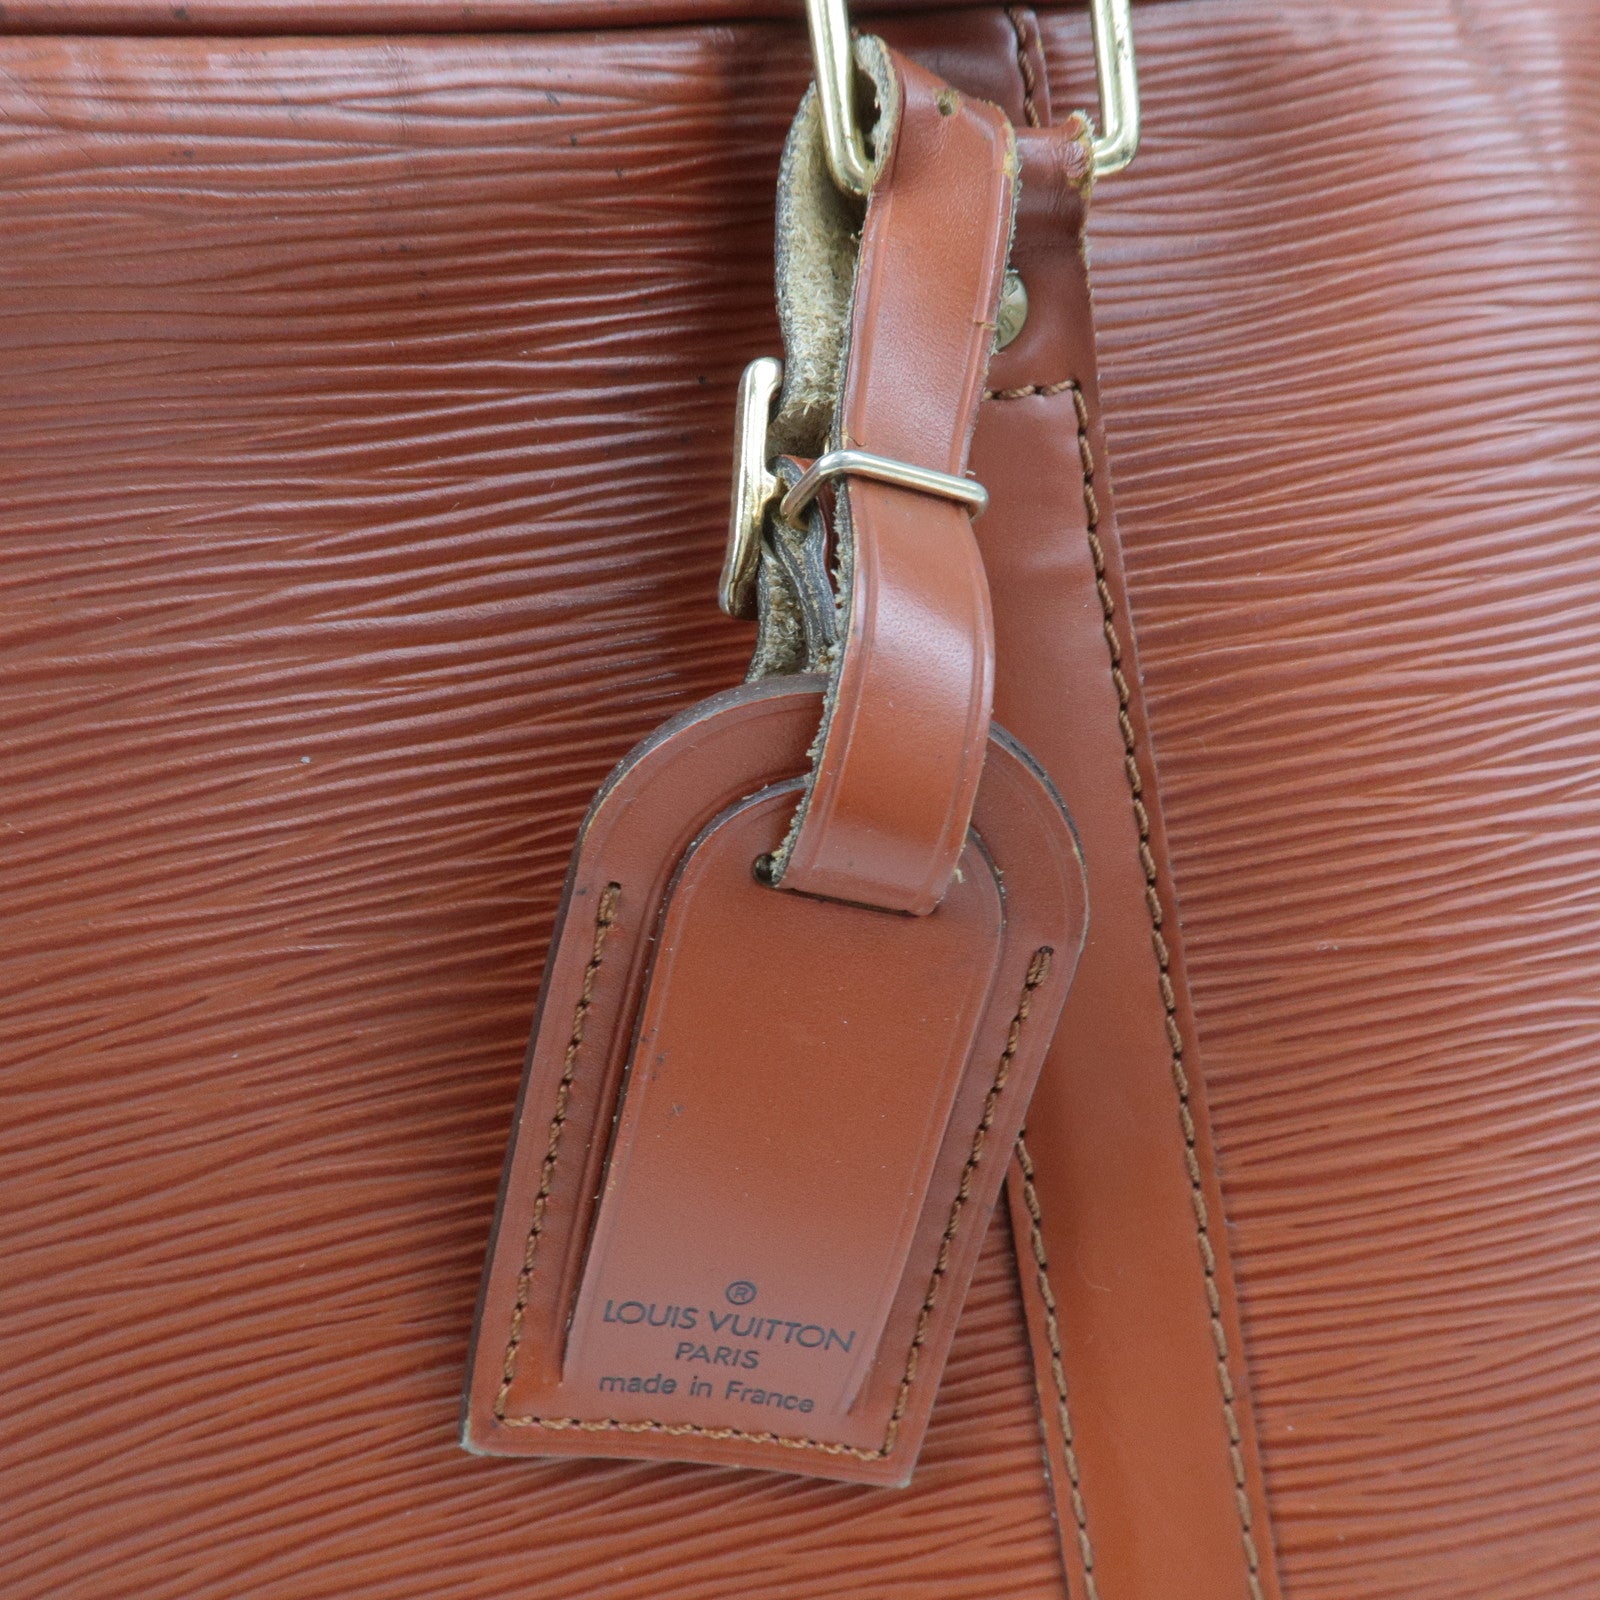 Porte-Documents Voyage Green Epi Leather Briefcase Bag – Poshbag